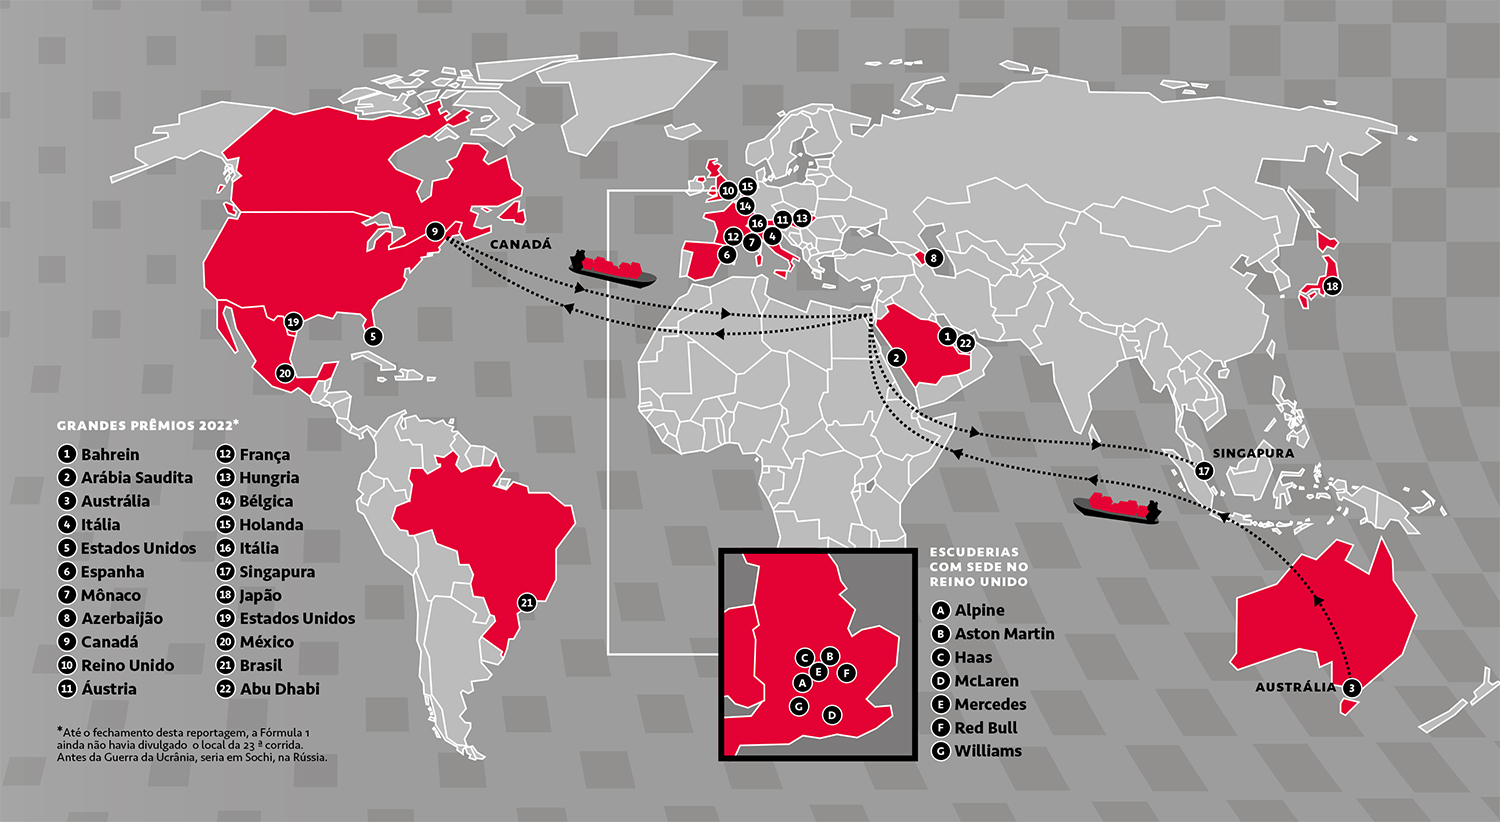 Mapa com a localização dos GPs, escuderias que ficam no Reino Unido e rotas de navio Austrália-Canadá-Singapura.